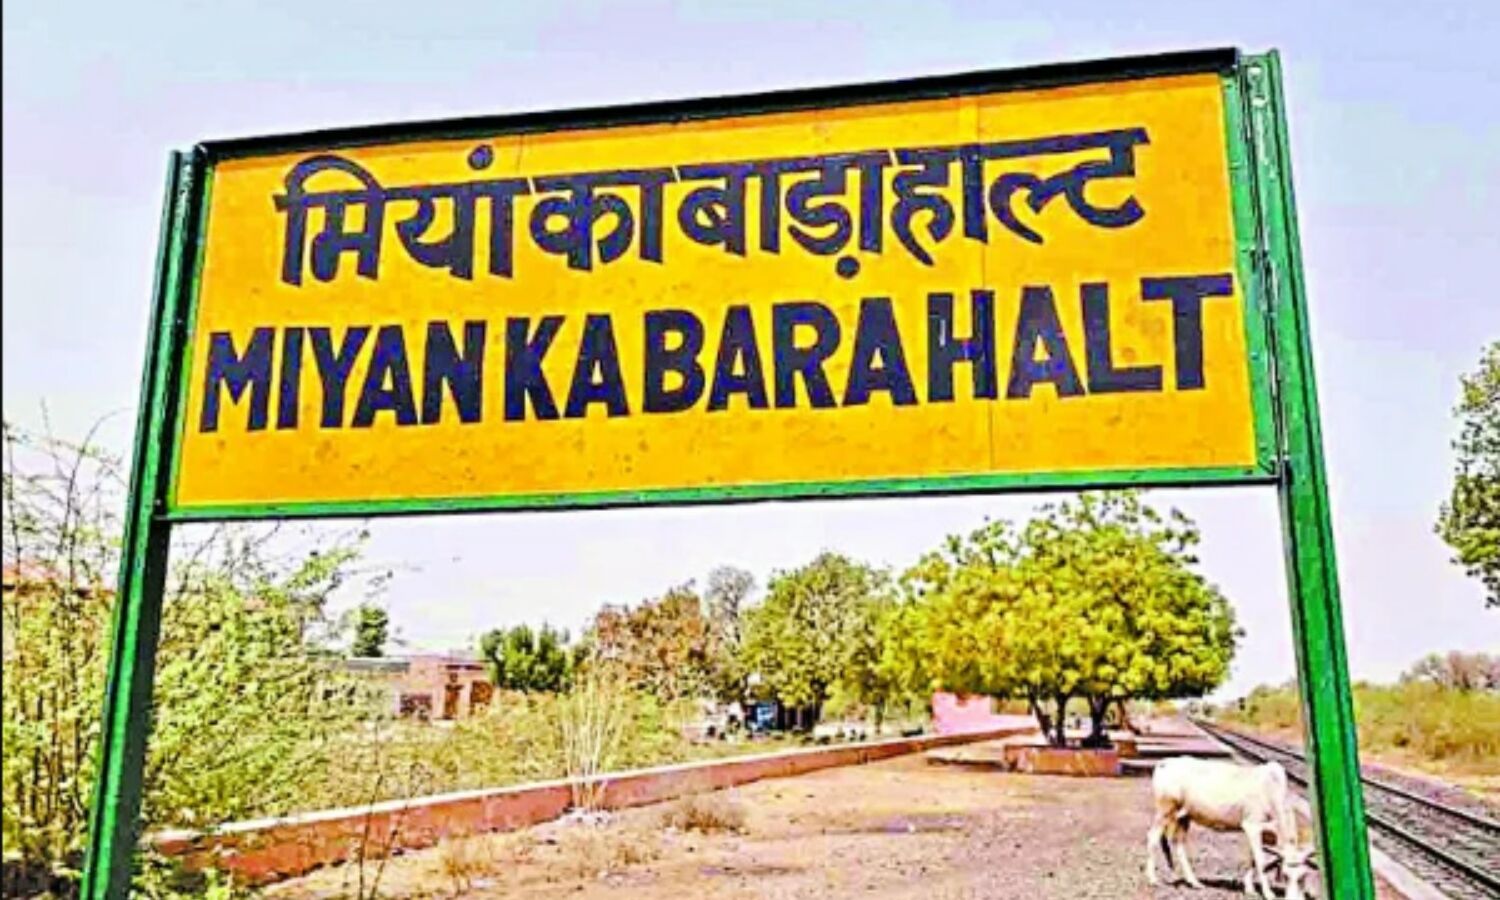 Barmer News : अब राजस्थान में भी नाम बदलने का खेल शुरू, मियां का बाड़ा रेलवे स्टेशन का भी बदल गया नाम